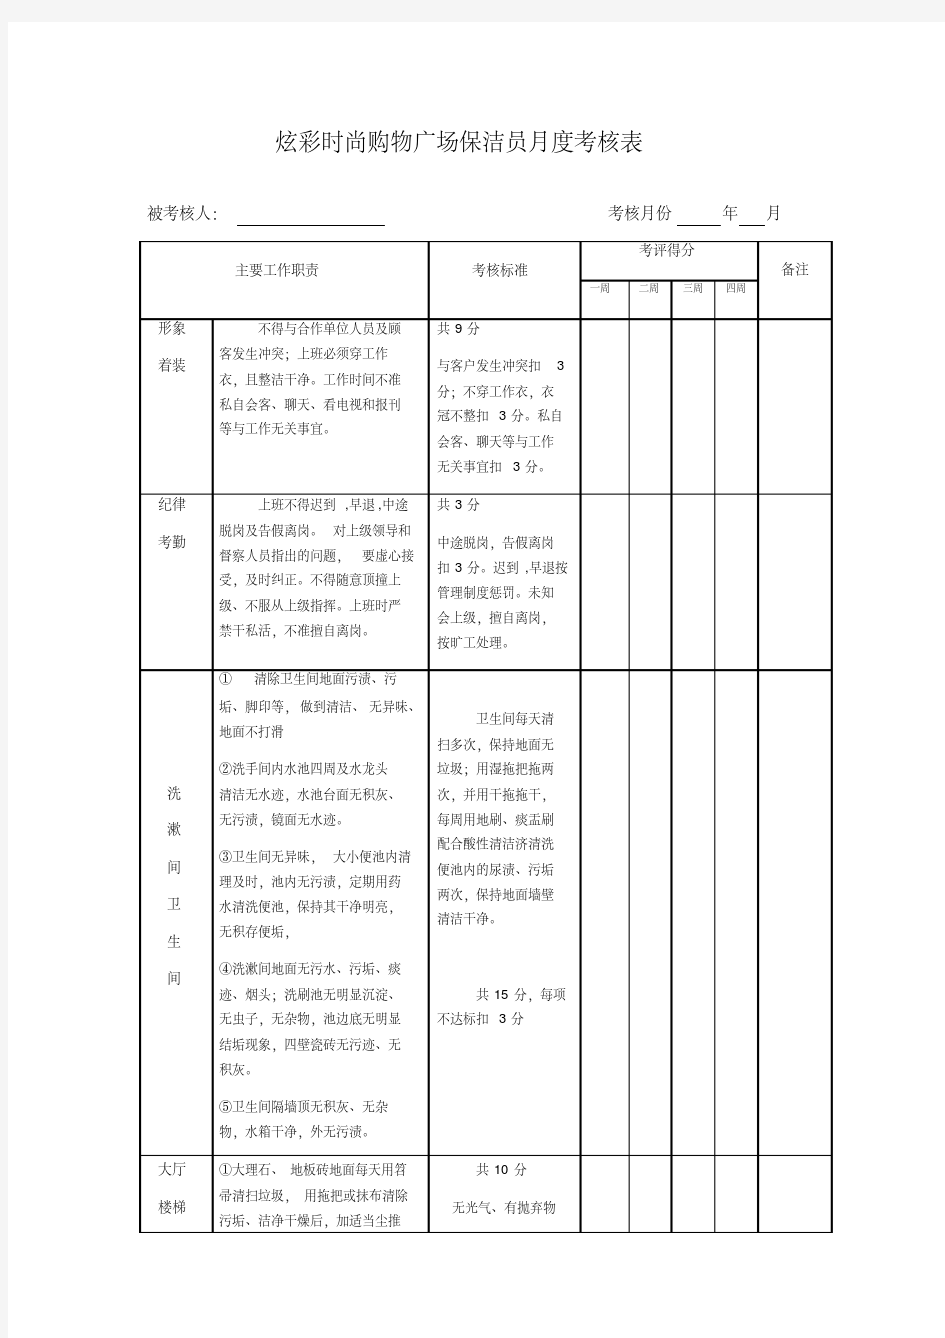 商场保洁员度考核表.pdf